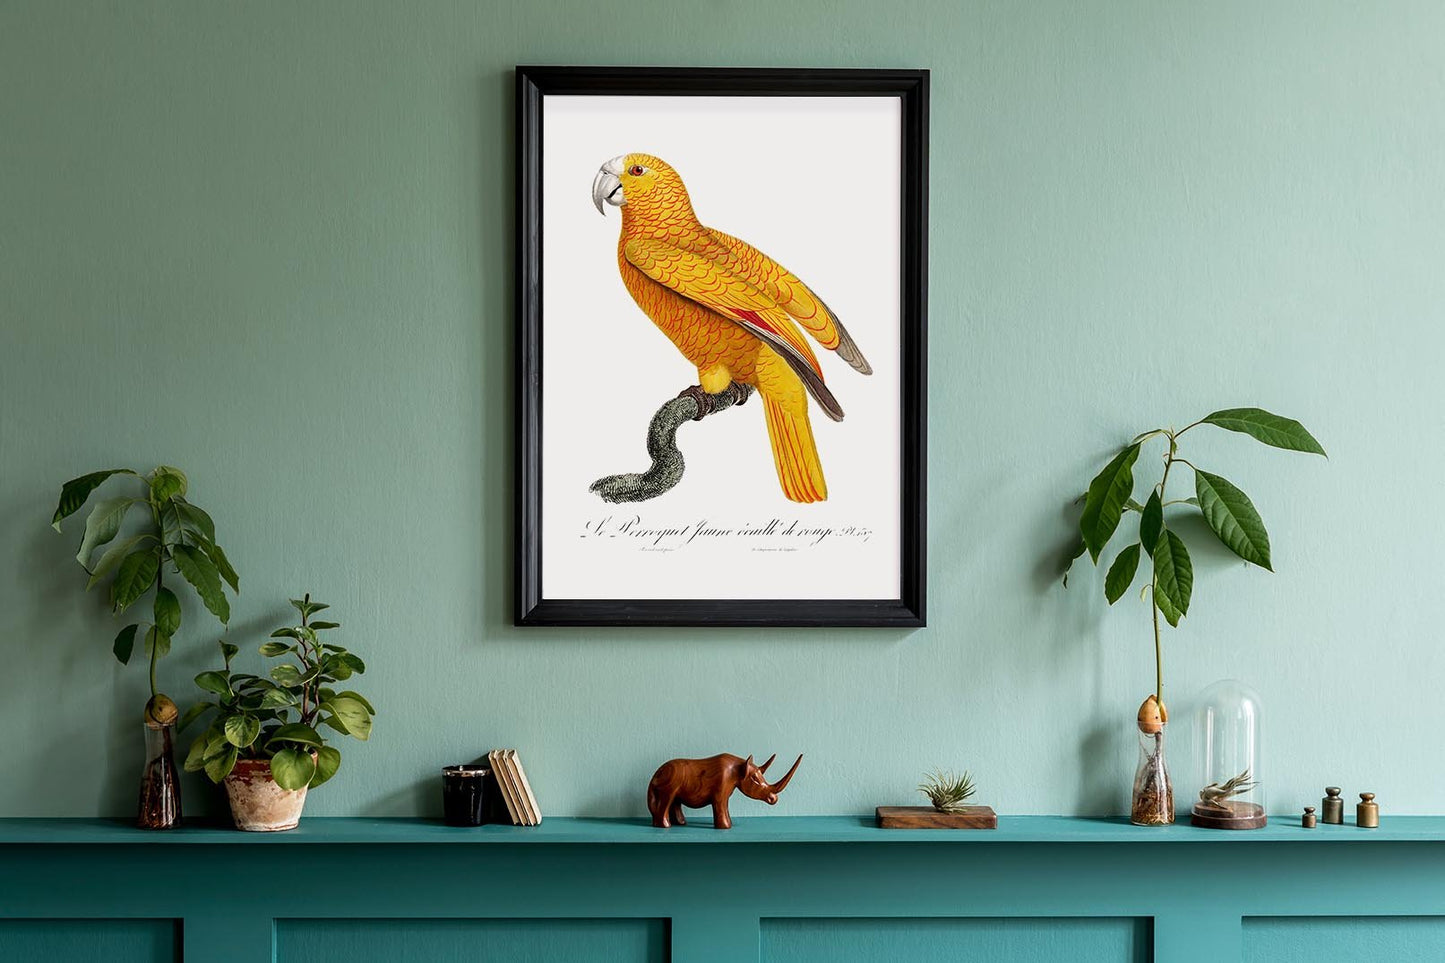 Yellow Parakeet Poster